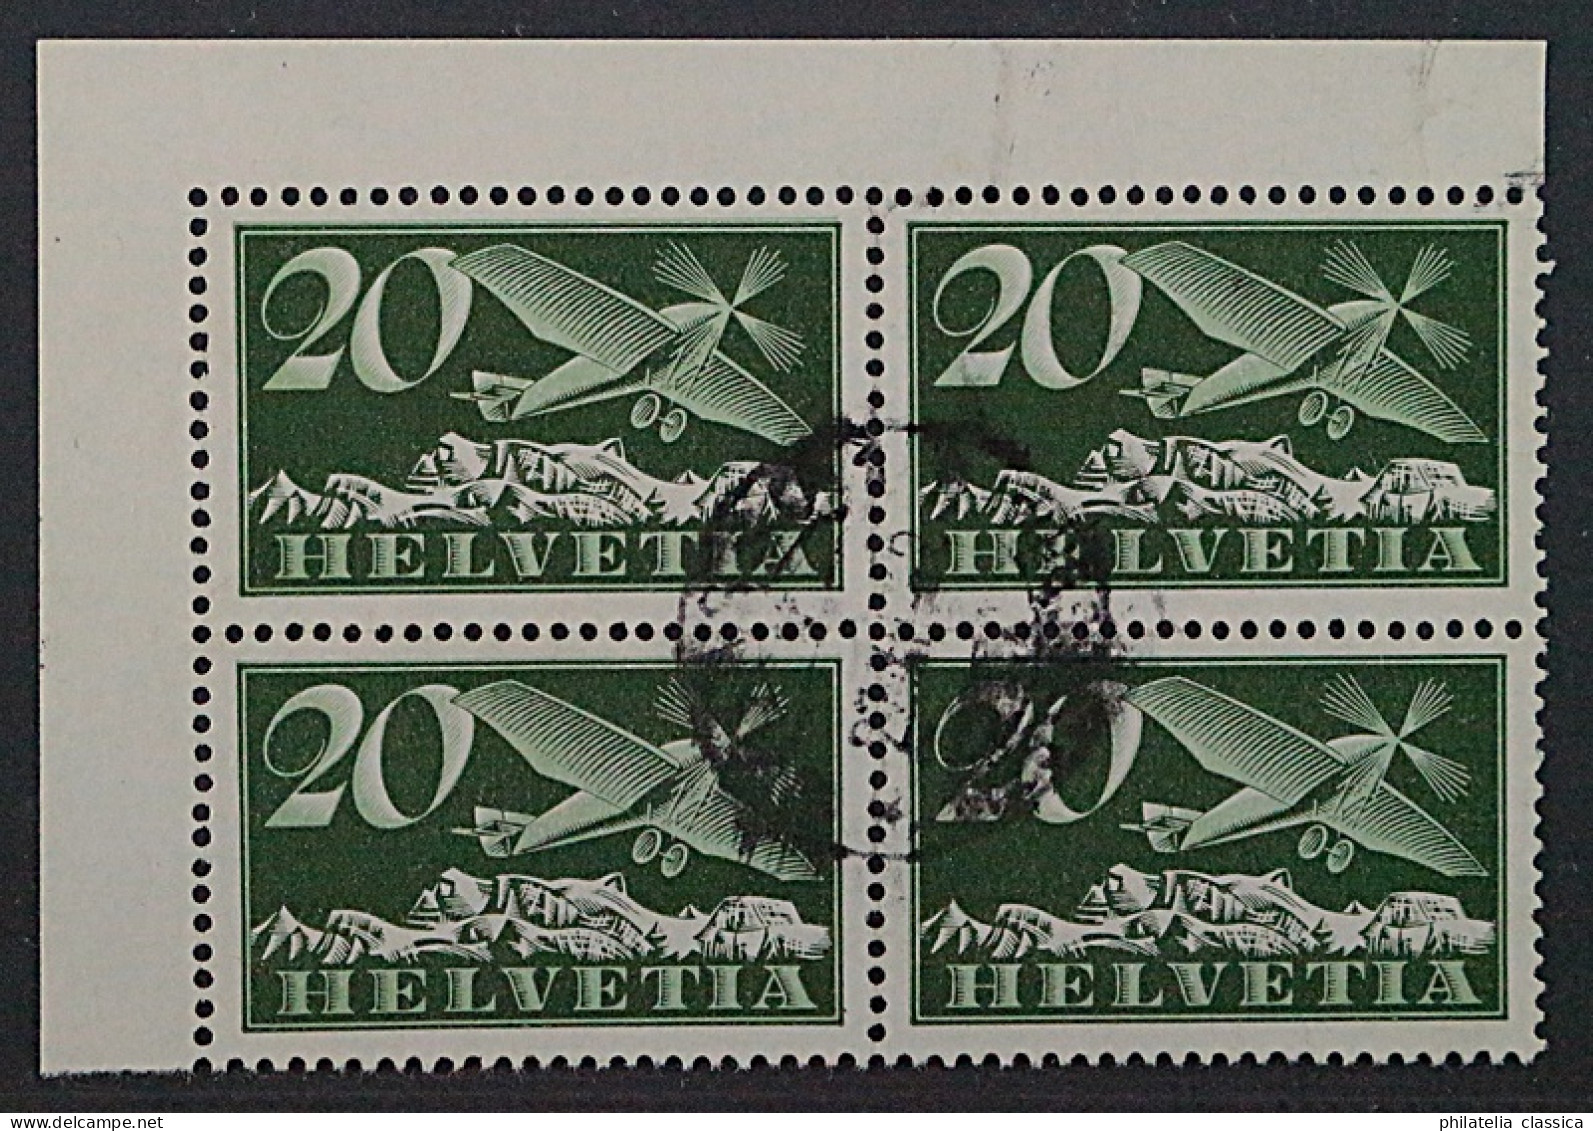 SCHWEIZ 213 Y, Papier Gestrichen Glatt (SBK F4y) Zentrisch Gestempelt, 320,-SFr. - Used Stamps